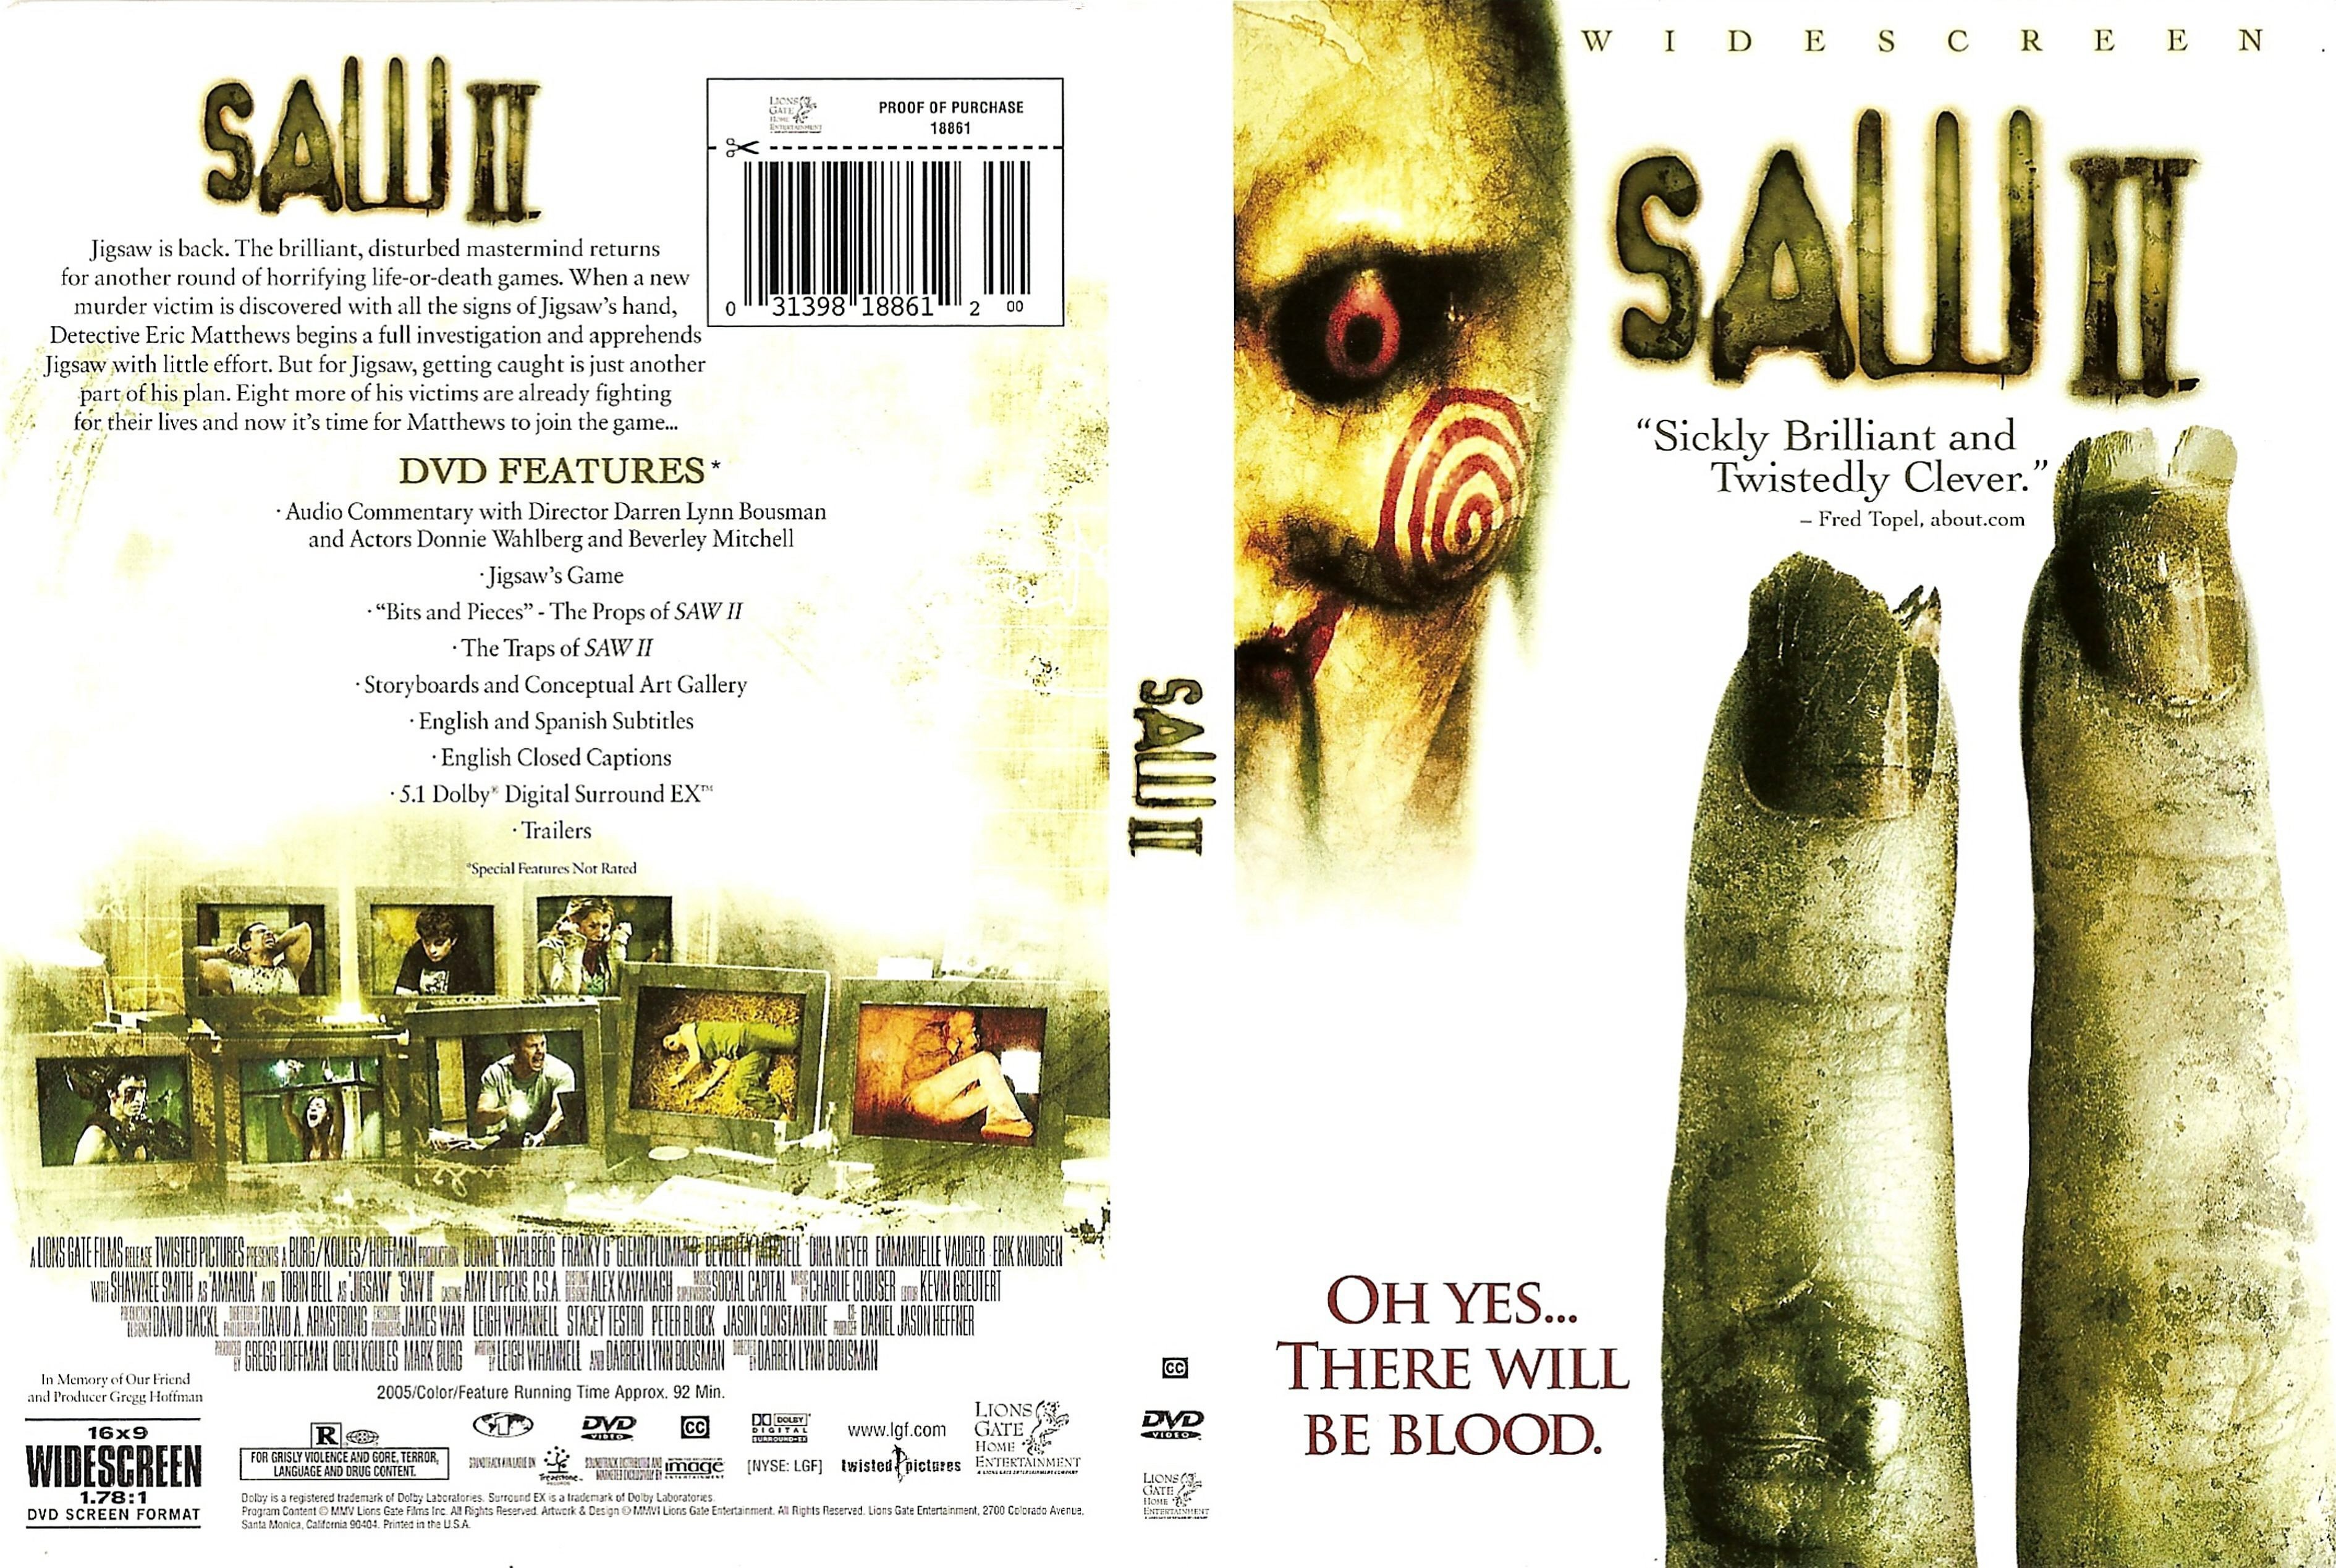 Saw II 2005 R1 DVD Cover.jpg.